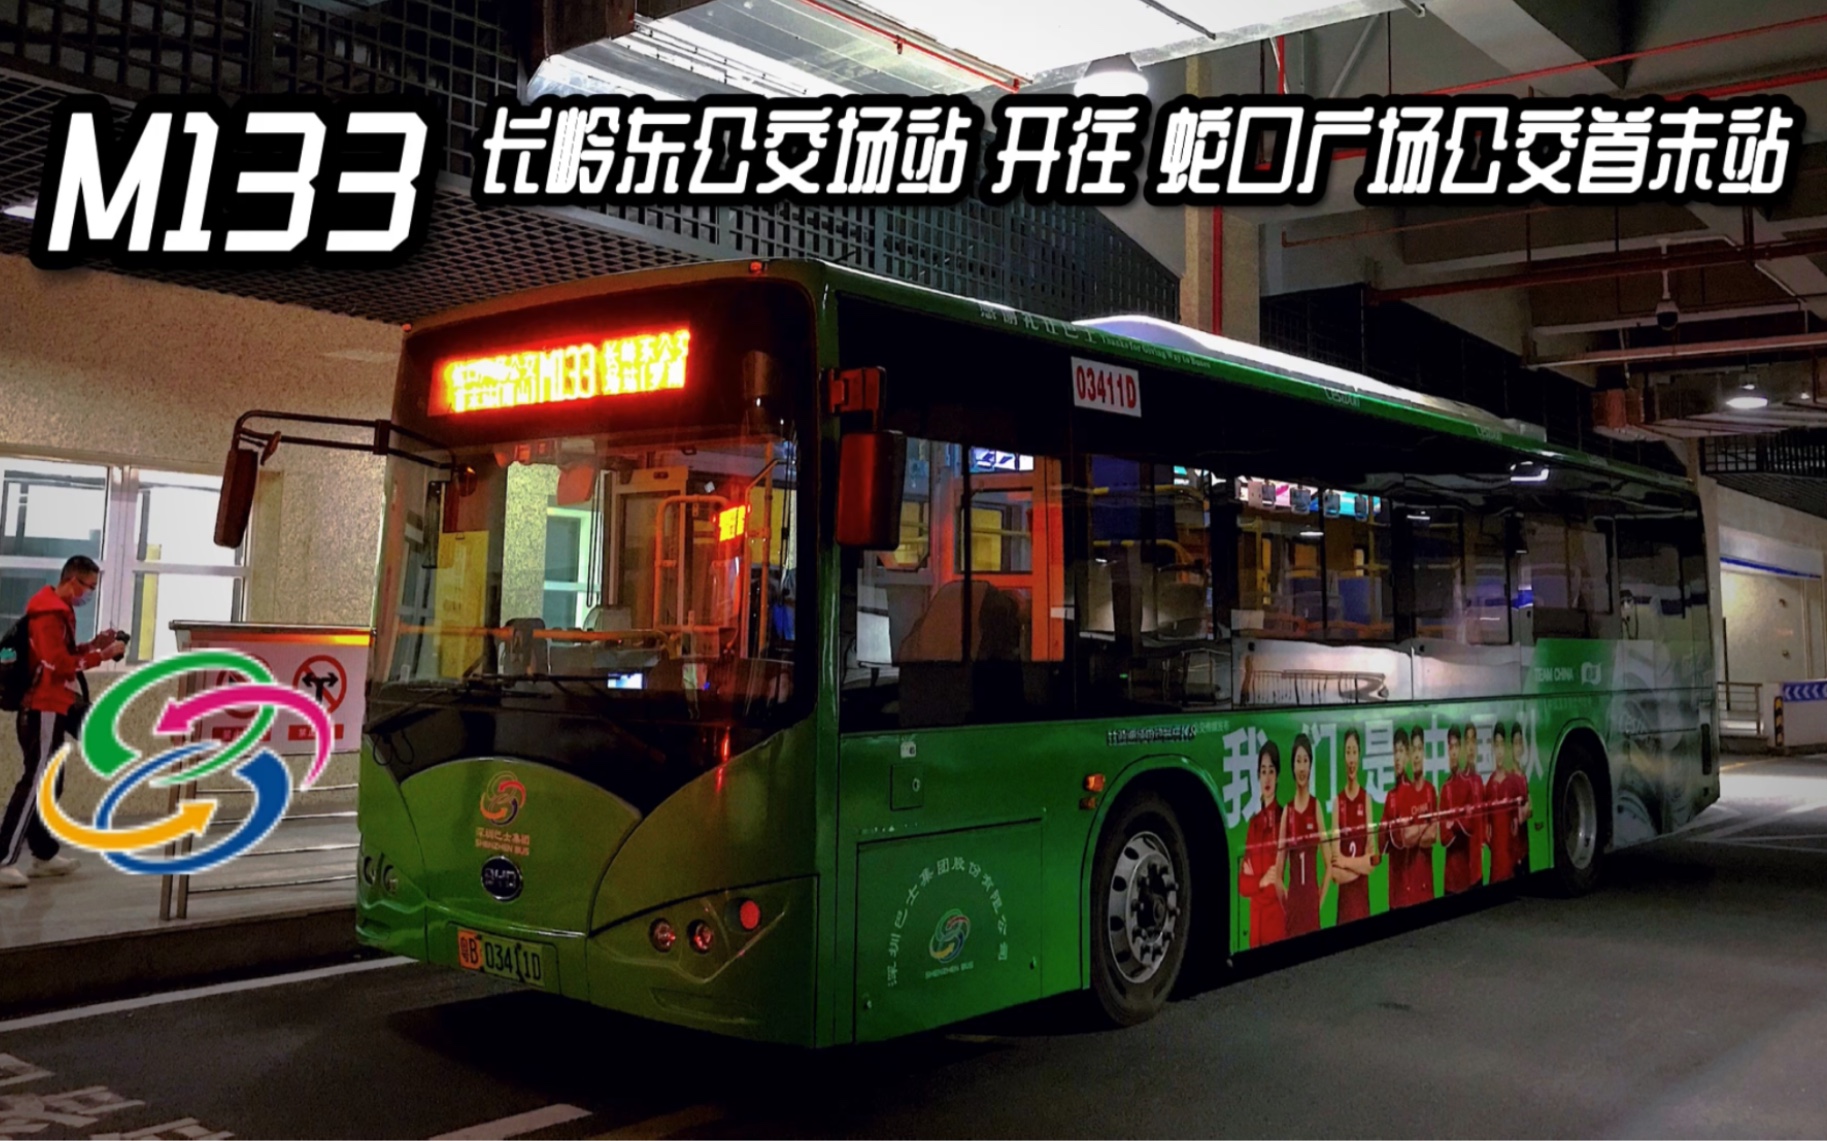 深圳公交pov69深圳巴士集团m133全程行车记录长岭东公交场站开往蛇口